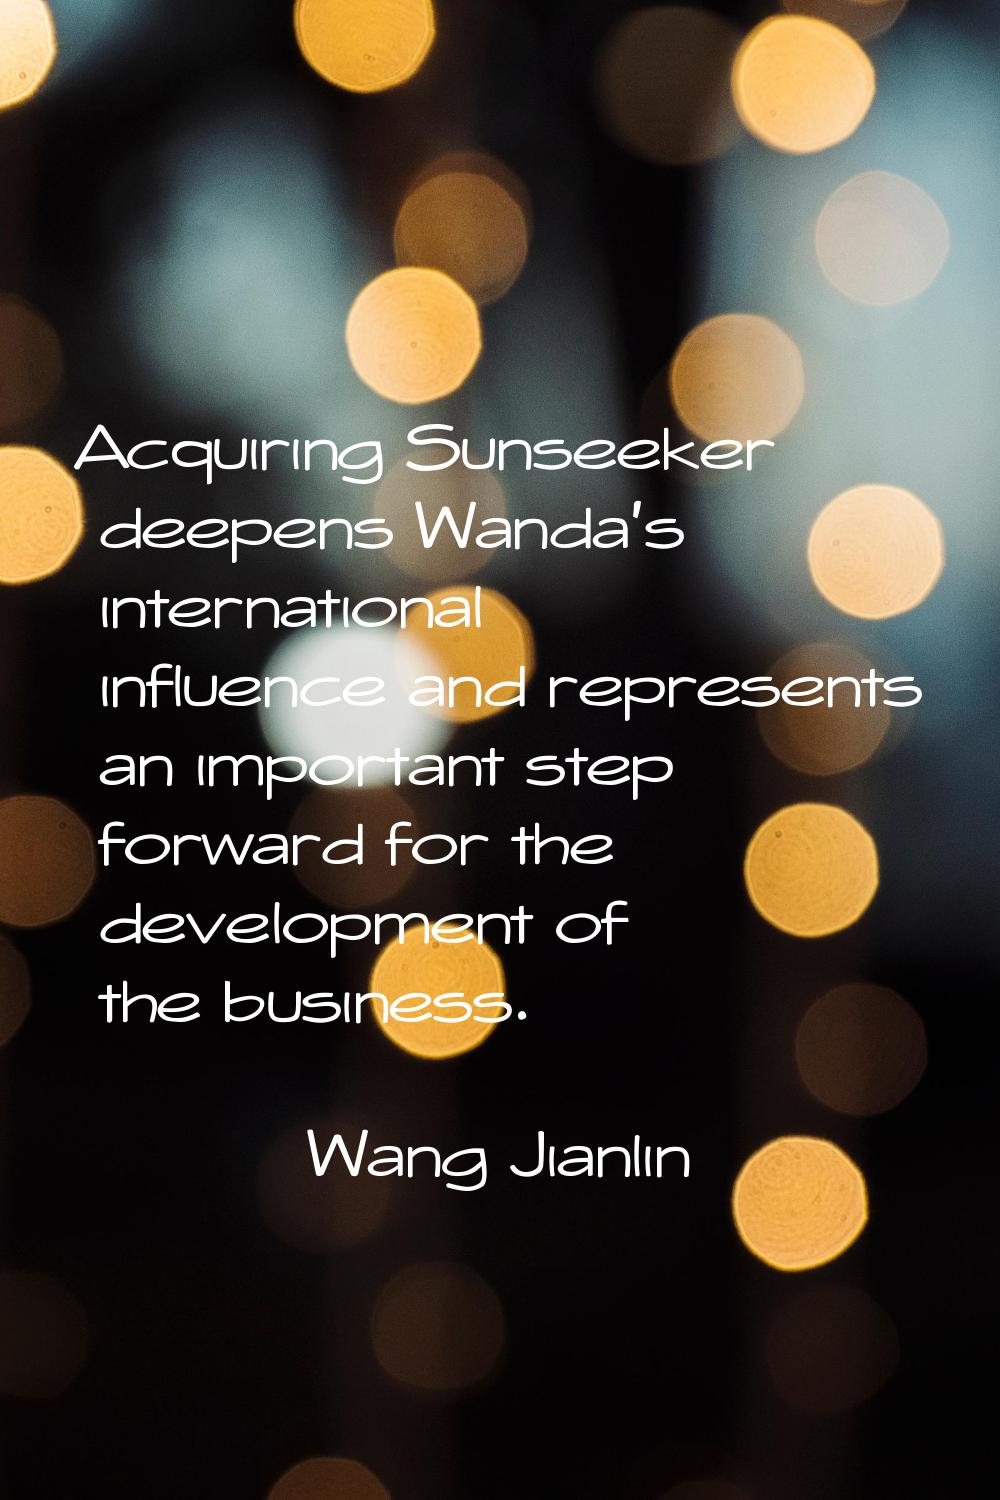 Acquiring Sunseeker deepens Wanda's international influence and represents an important step forwar